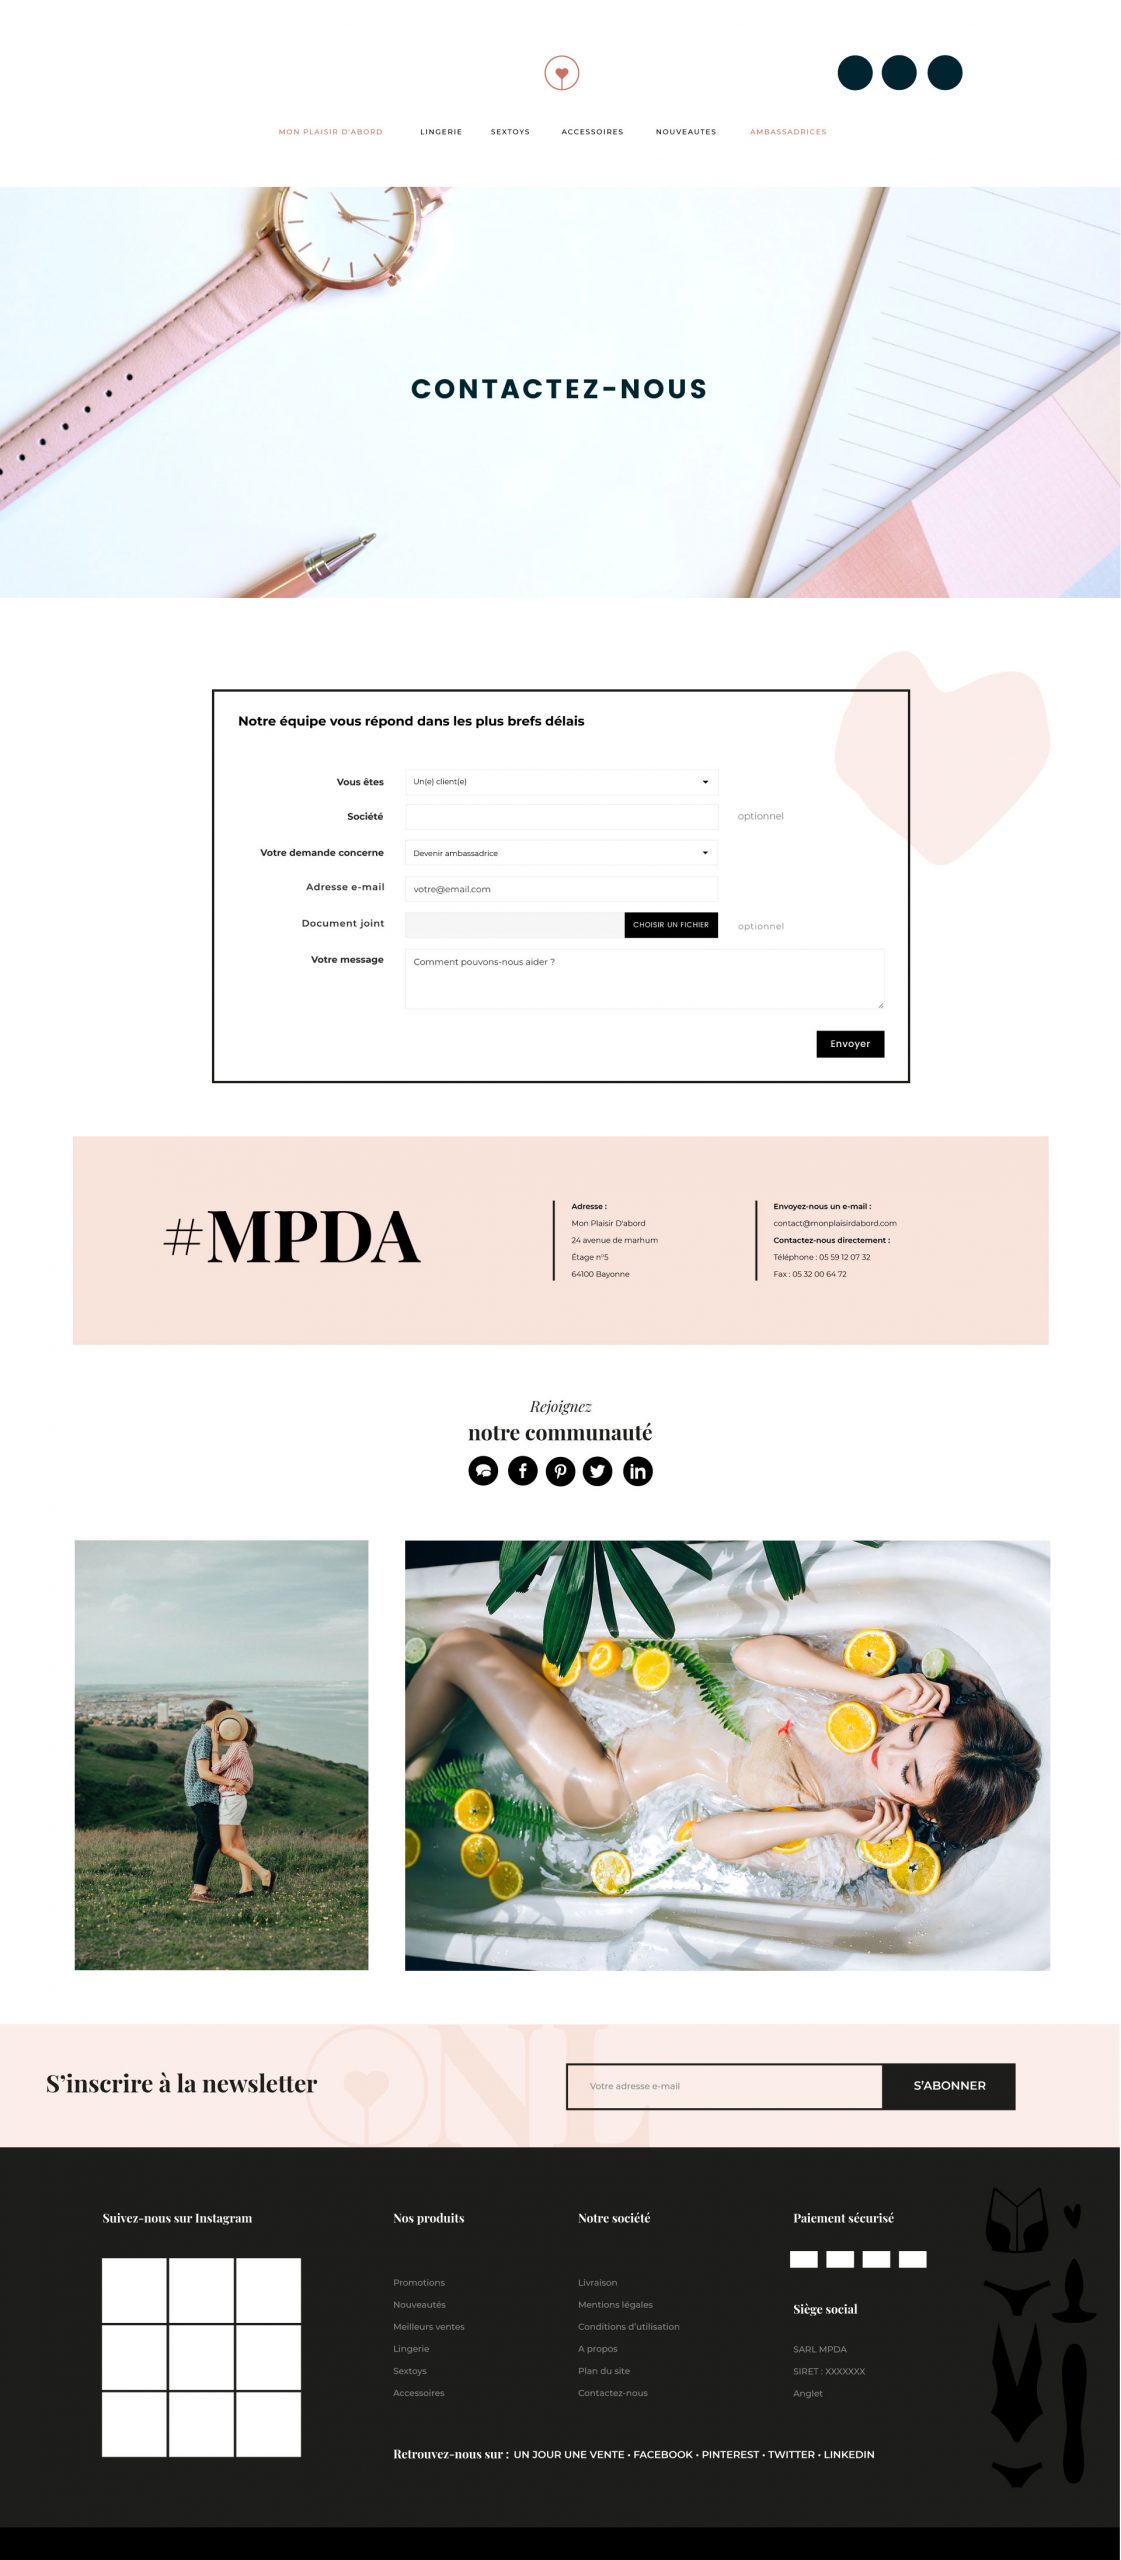 MPDA_WEB4_Contact-MPDA